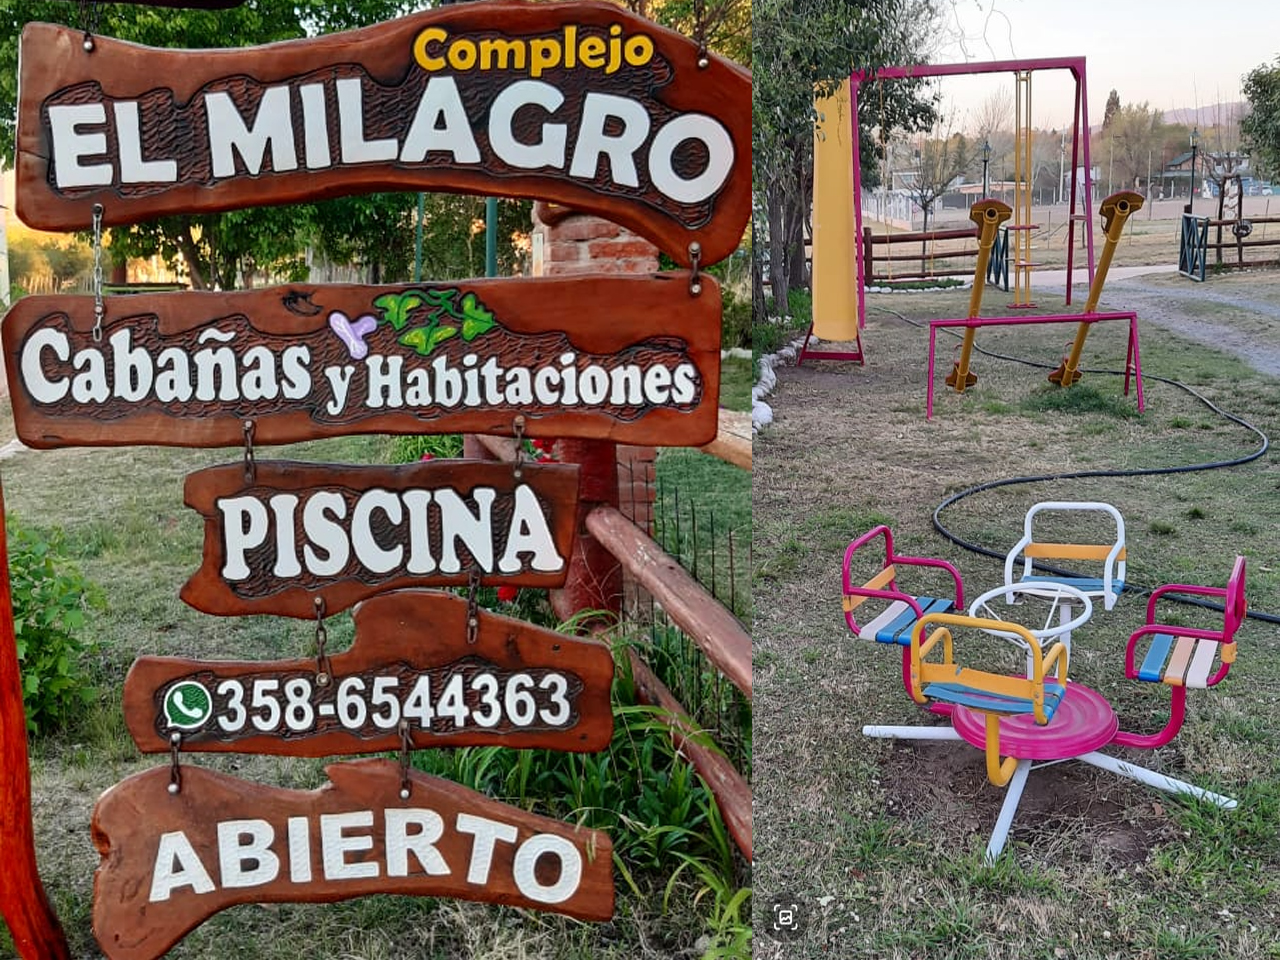 Complejo, jardín con juegos de plaza | El Milagro Cabañas - Mina Clavero - Traslasierra